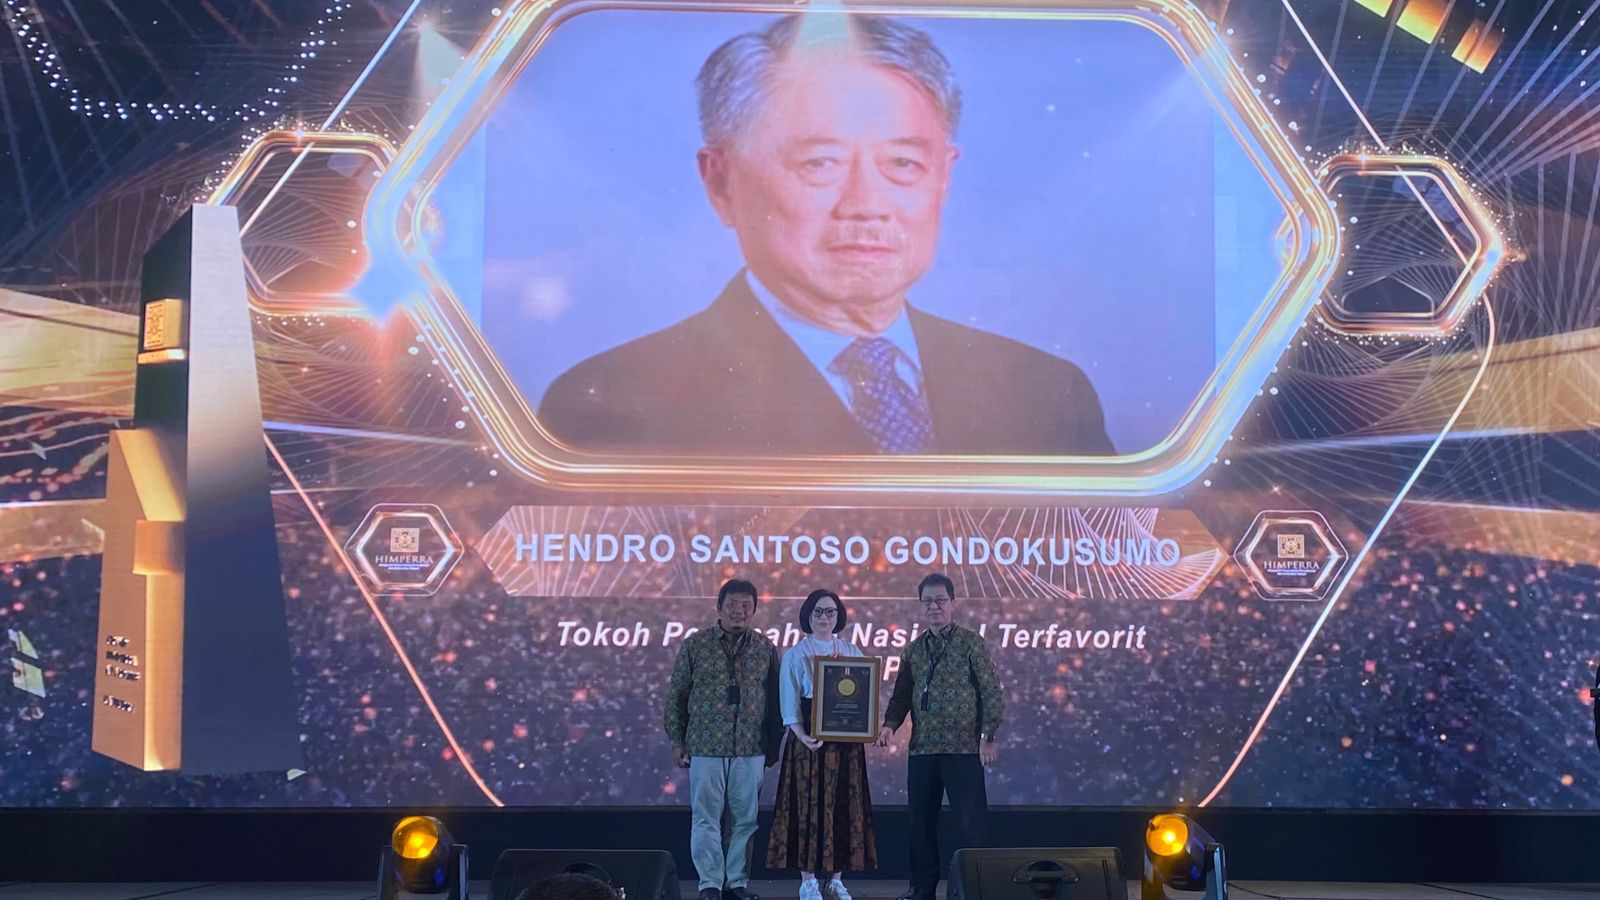 Penghargaan Tokoh Perumahan Nasional Terfavorit untuk Bapak Hendro S. Gondokusumo